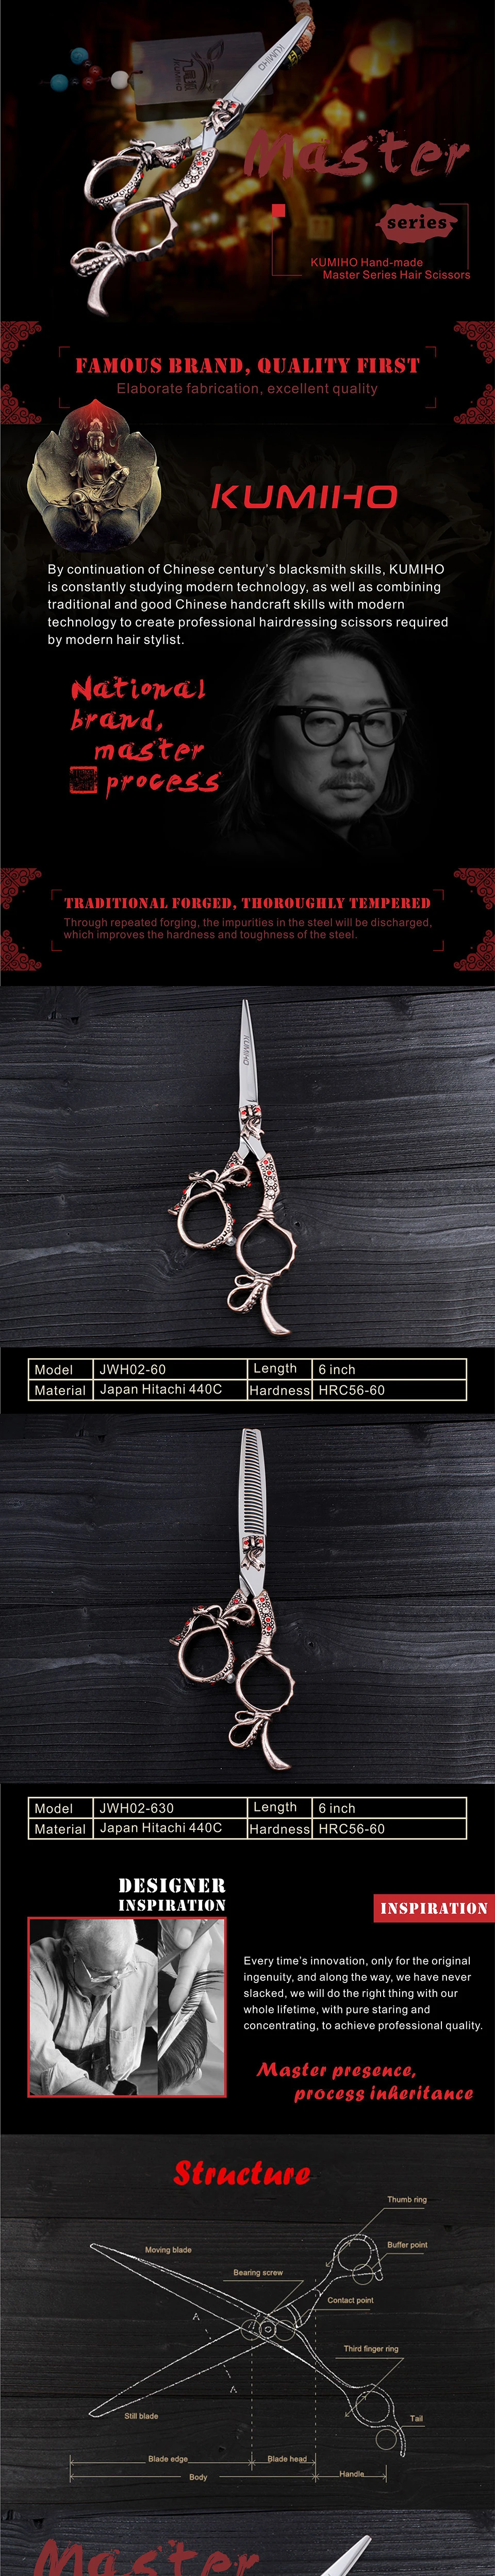 KUMIHO ножницы для волос 6 дюймов Парикмахерские ножницы комплект ножницы для салона красоты из Японии 440C нержавеющая сталь